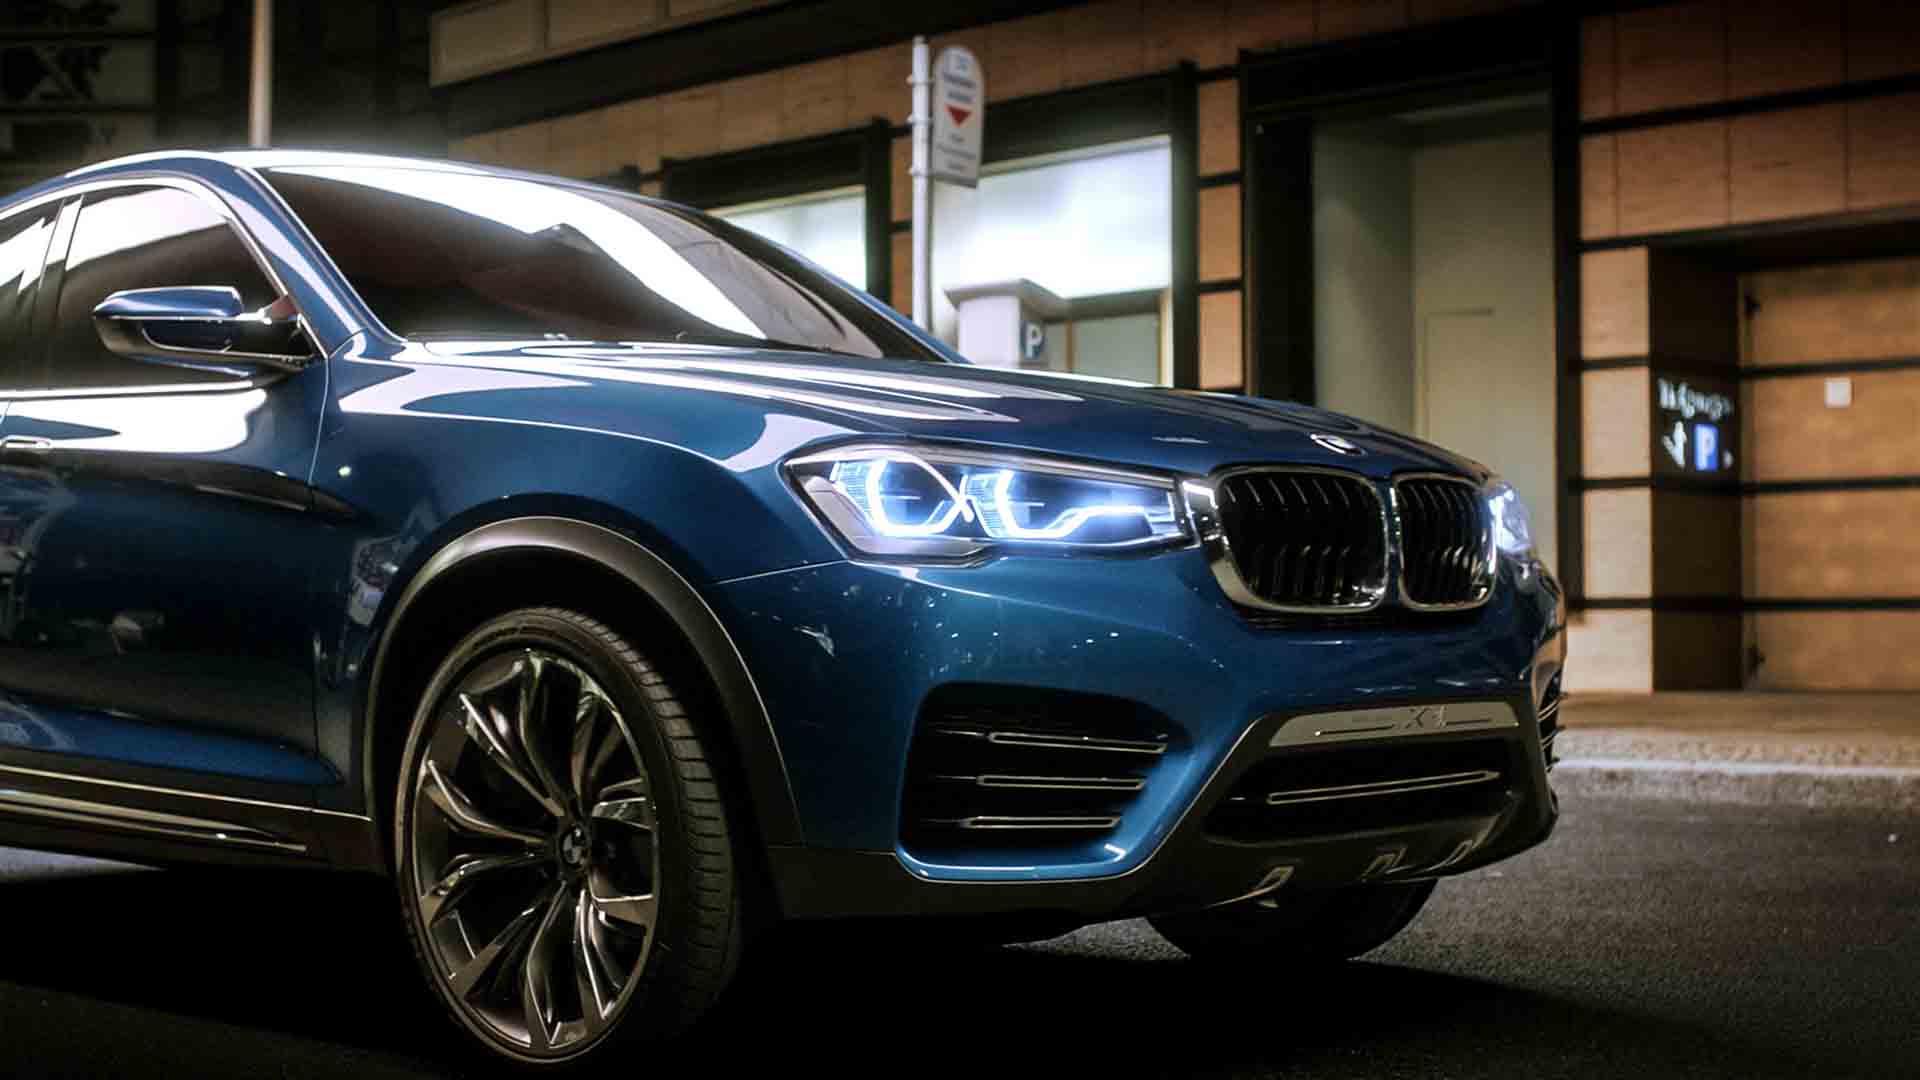 Das Bild zeigt einen blauen BMW. Es ist die Marke Concept X4. Er fährt auf einer Straße von links in das Bild. Hinter ihm sieht man eine Bushaltestelle. Das Bild dient als Sliderbild für den Portfolioeintrag BMW Concept X4 von Panda Pictures.